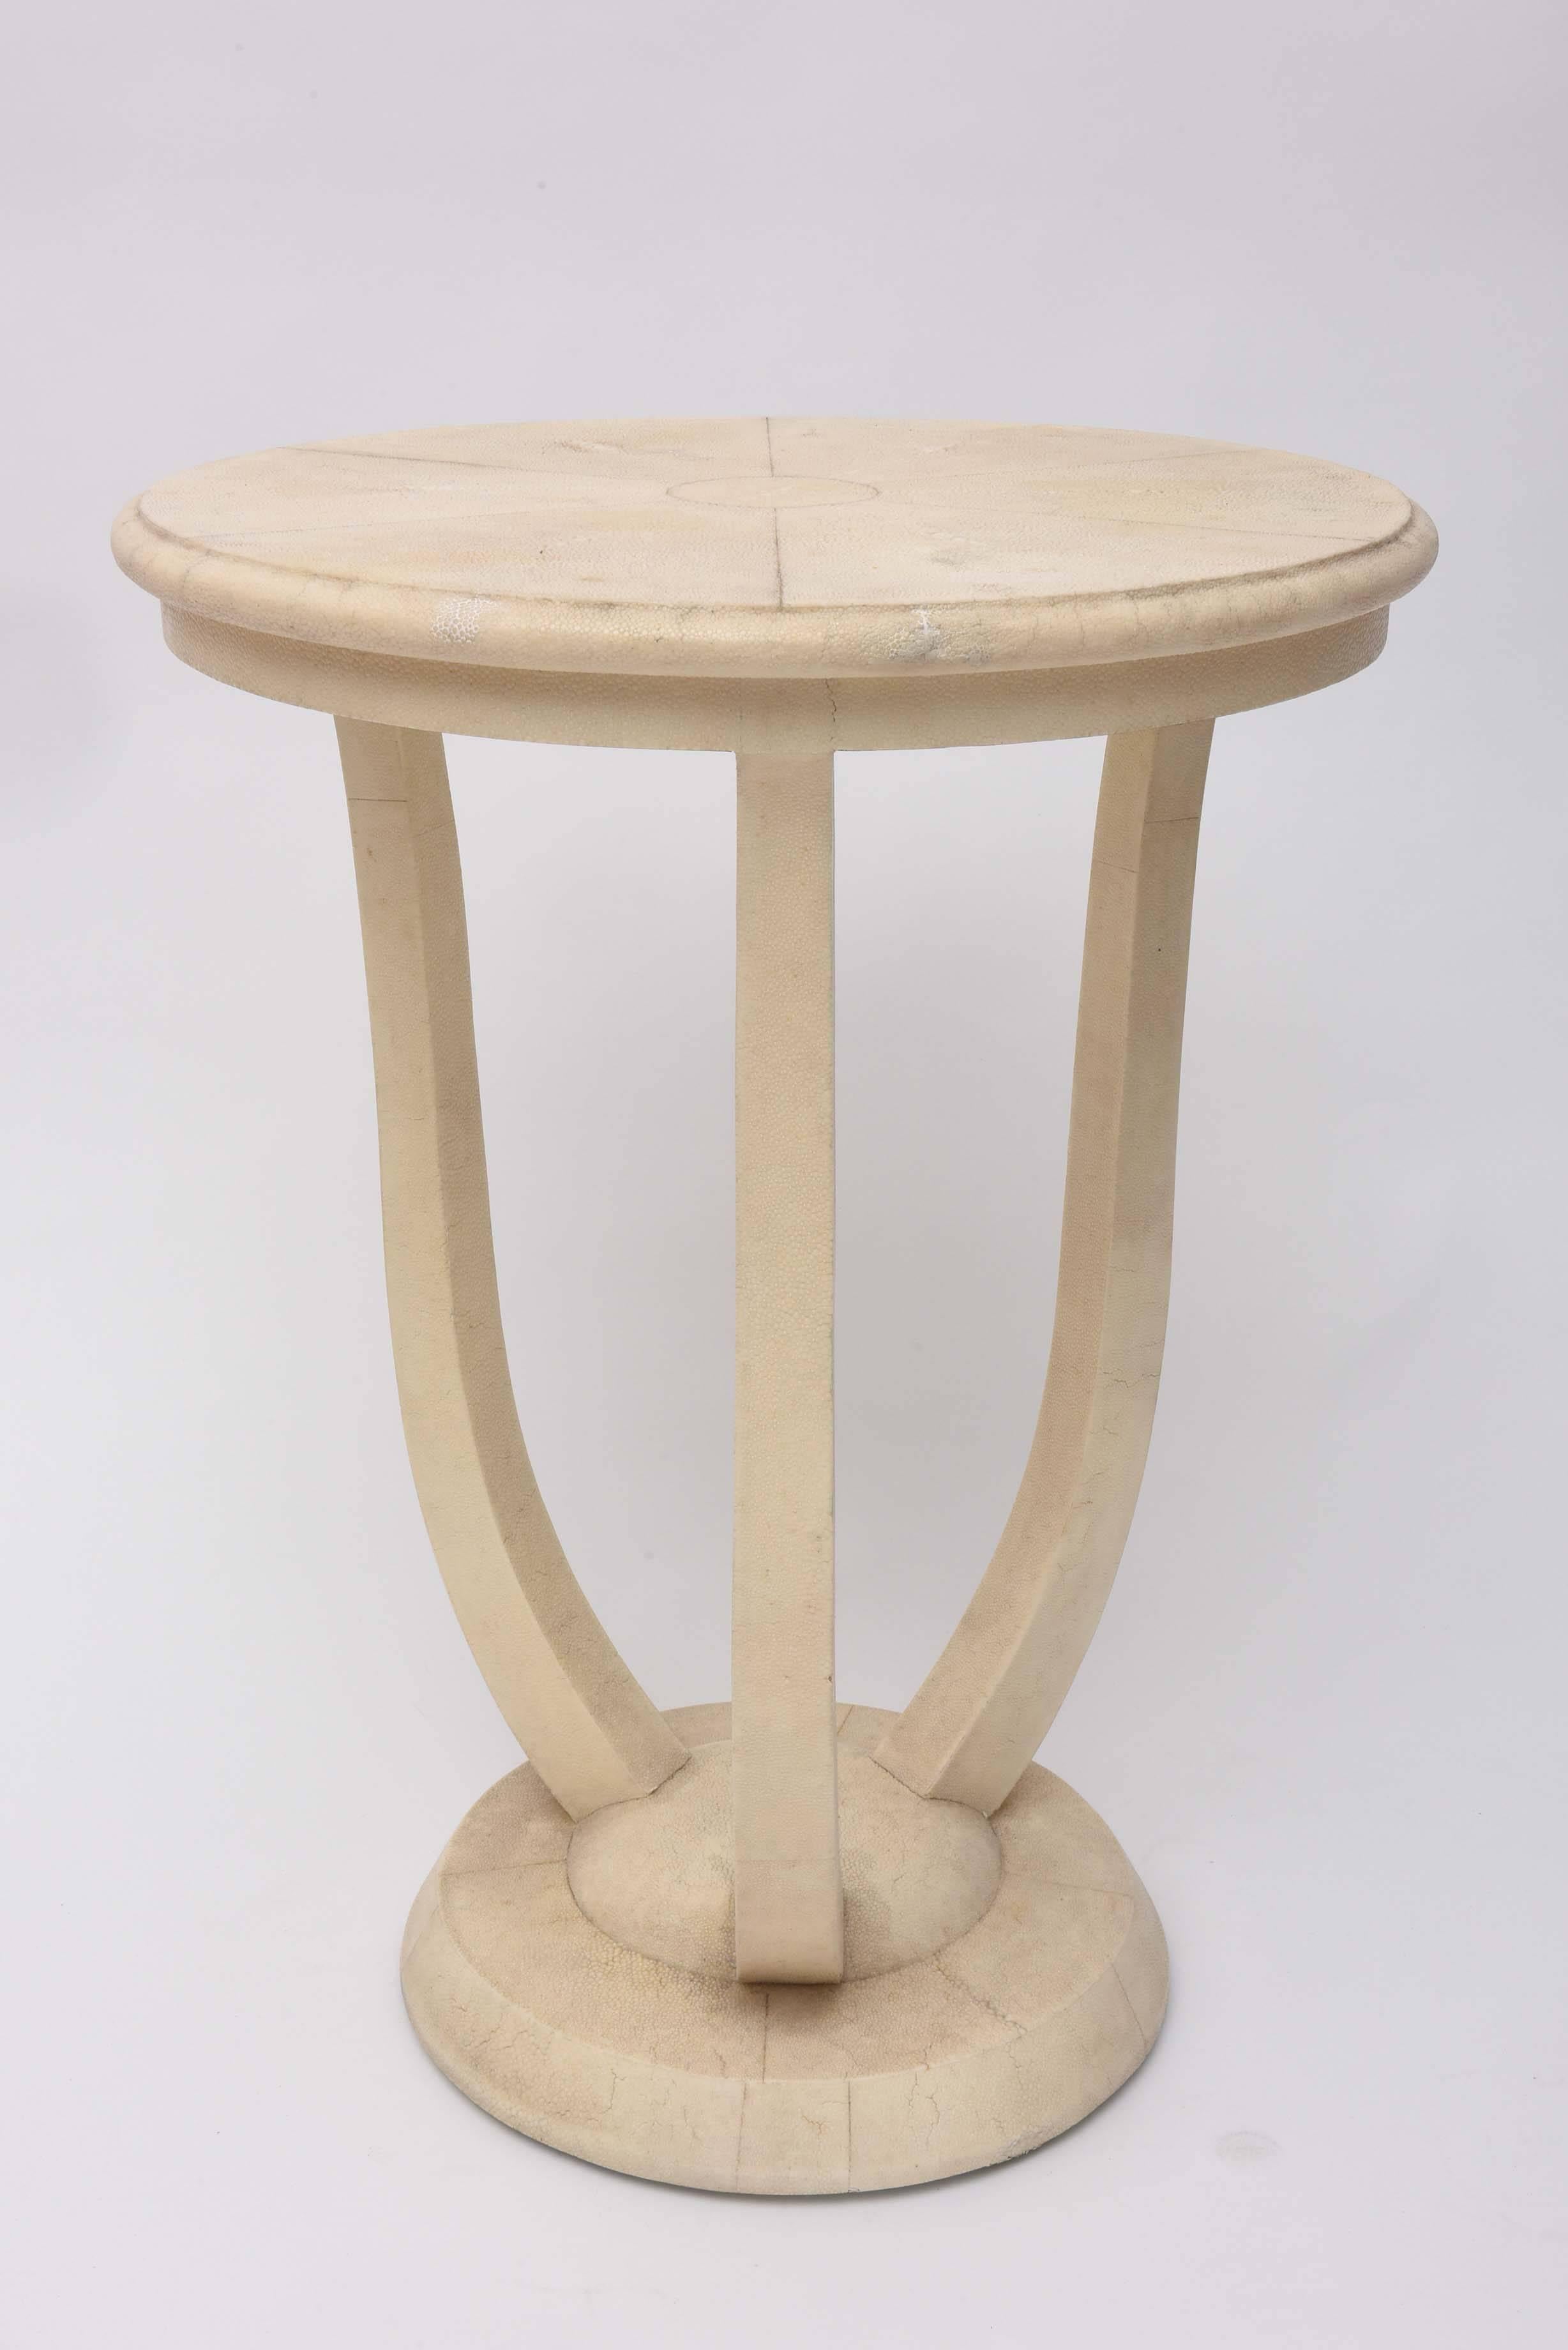 Eine Neuinterpretation einer klassischen Form.
Der Tisch weist eine subtile Farbe und Textur auf.
Label unten.